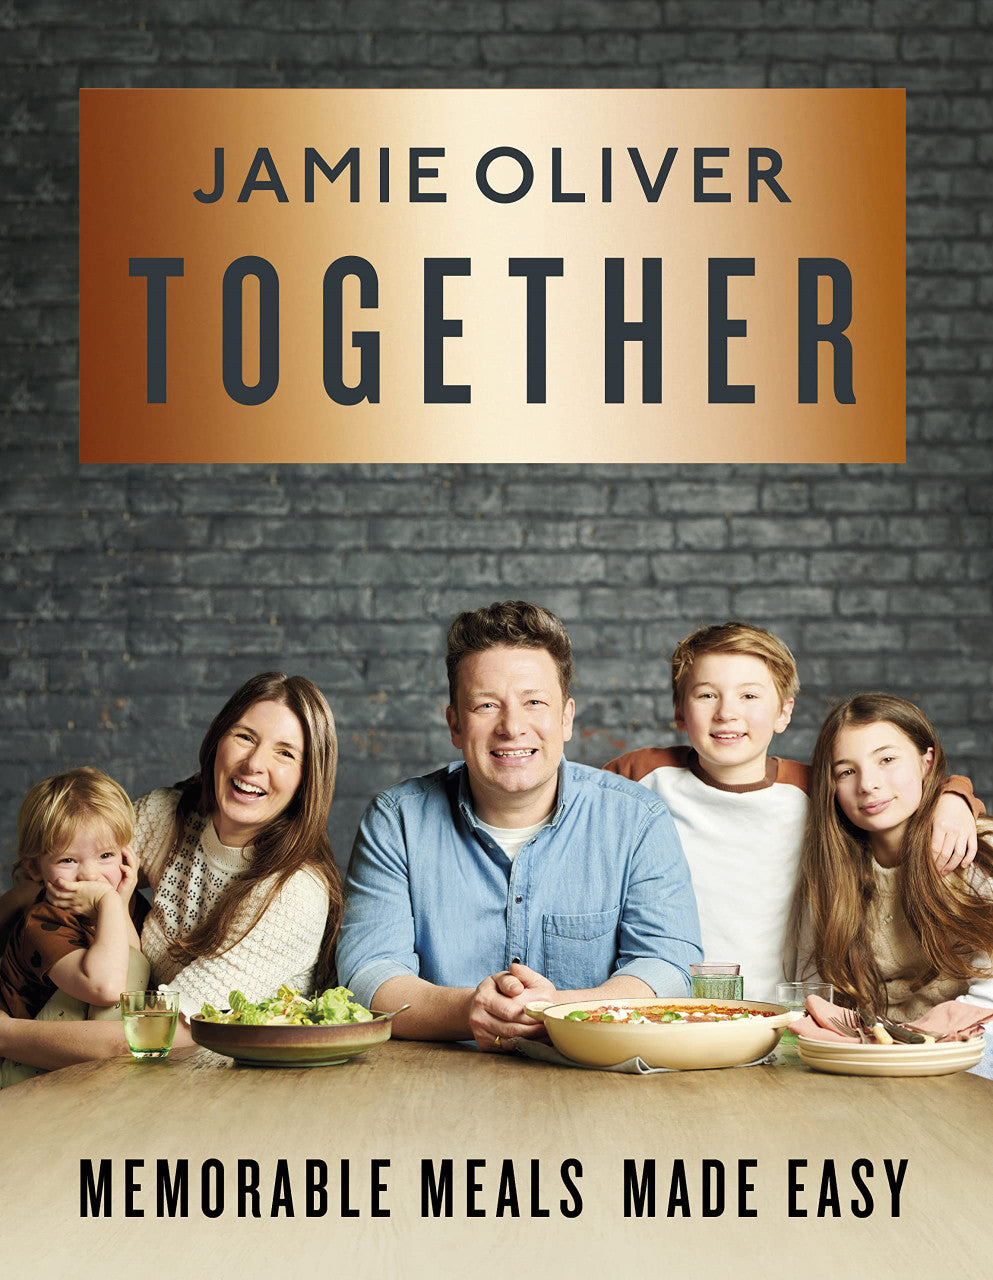 Jamie Oliver - Together hardback cook book. Memorable meals made easy.